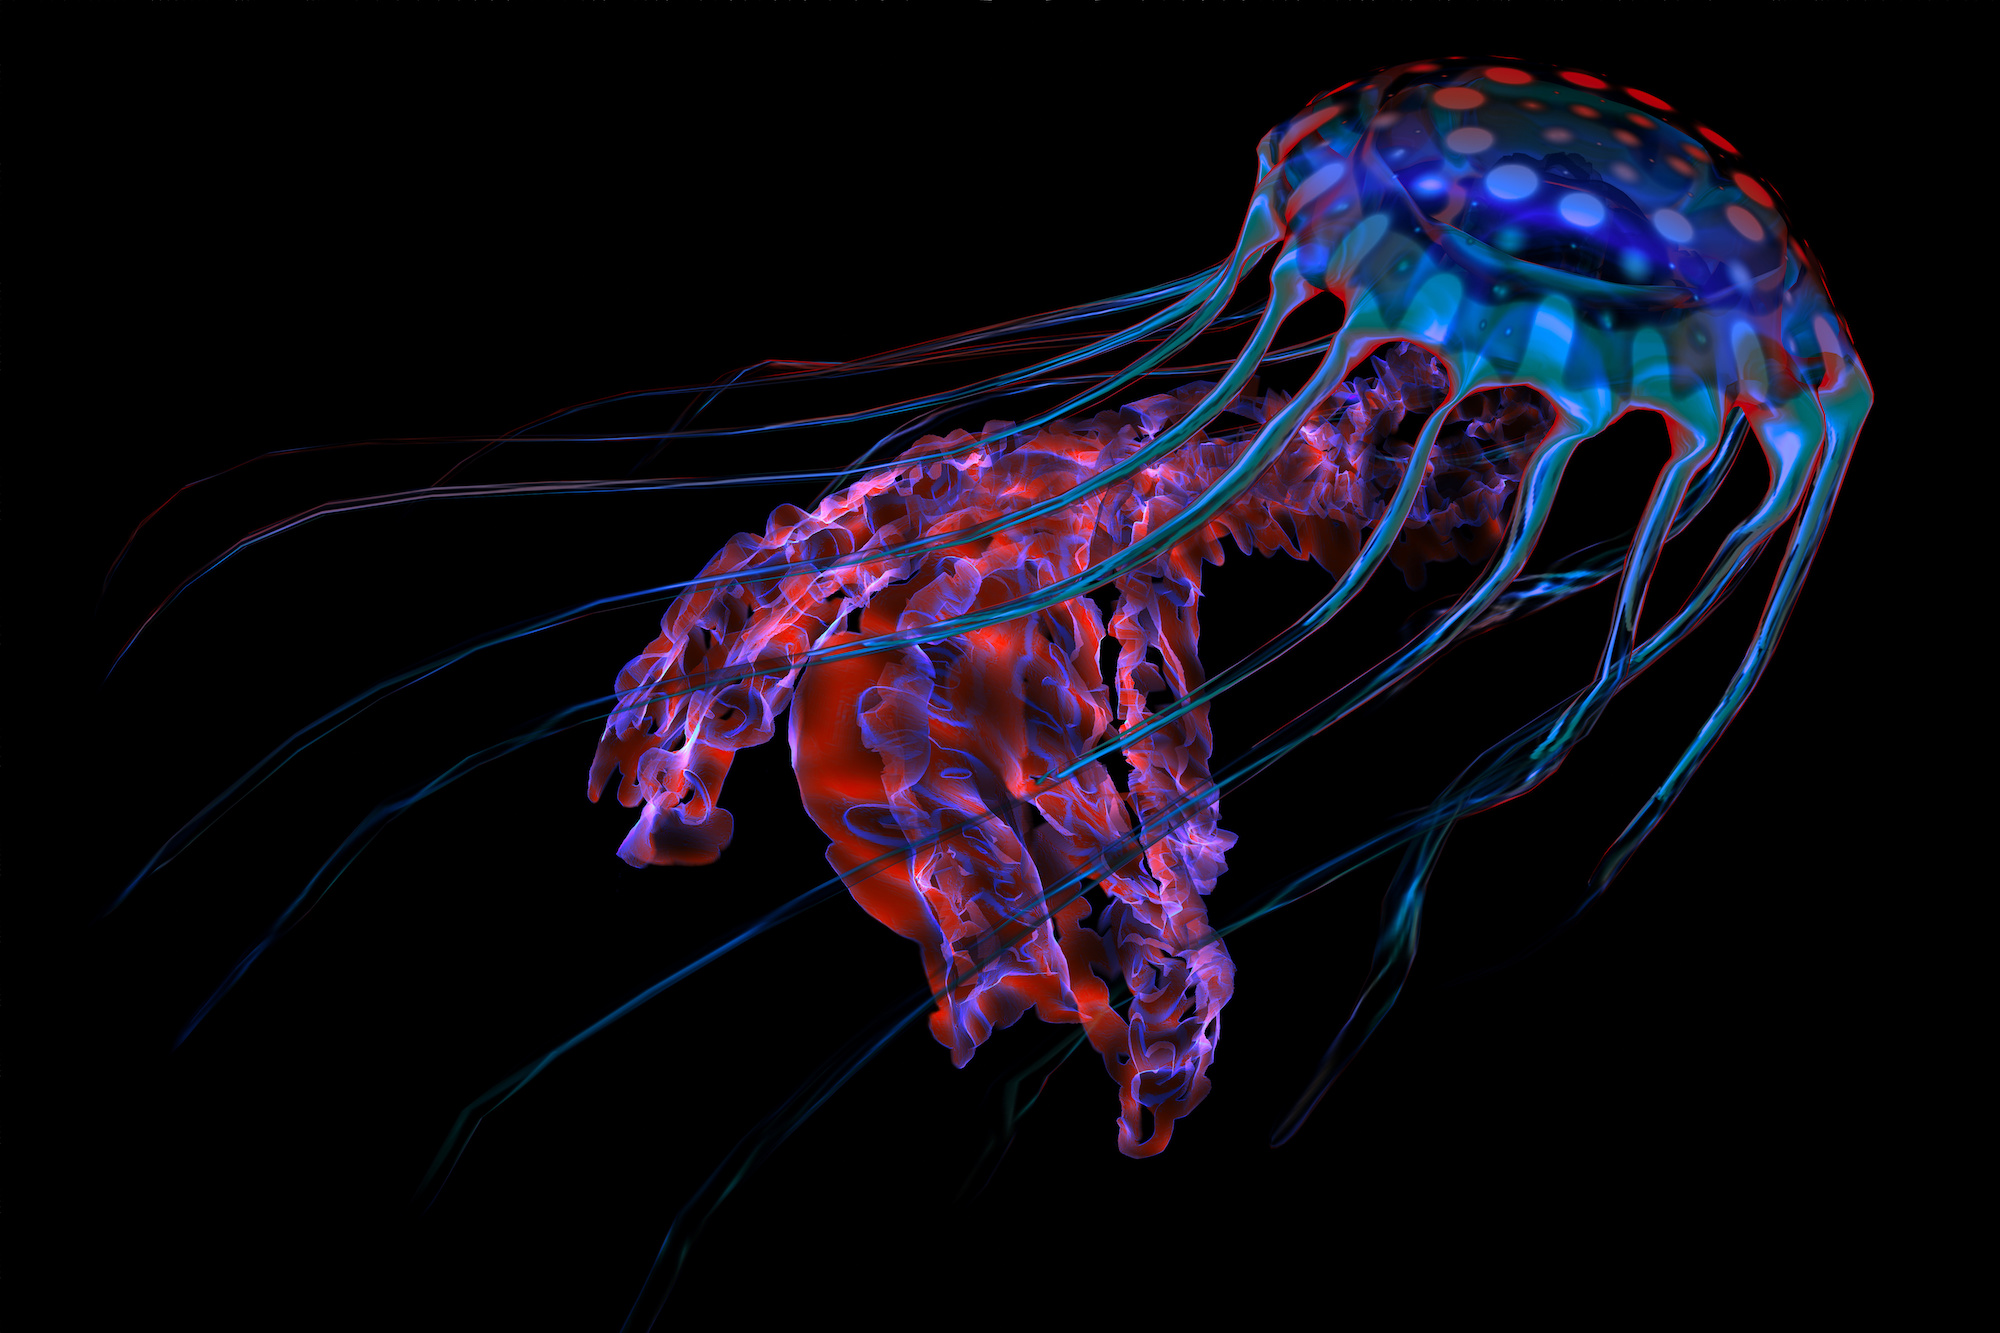 Méduse dotée de la capacité de bioluminescence. © Catmando, Adobe Stock